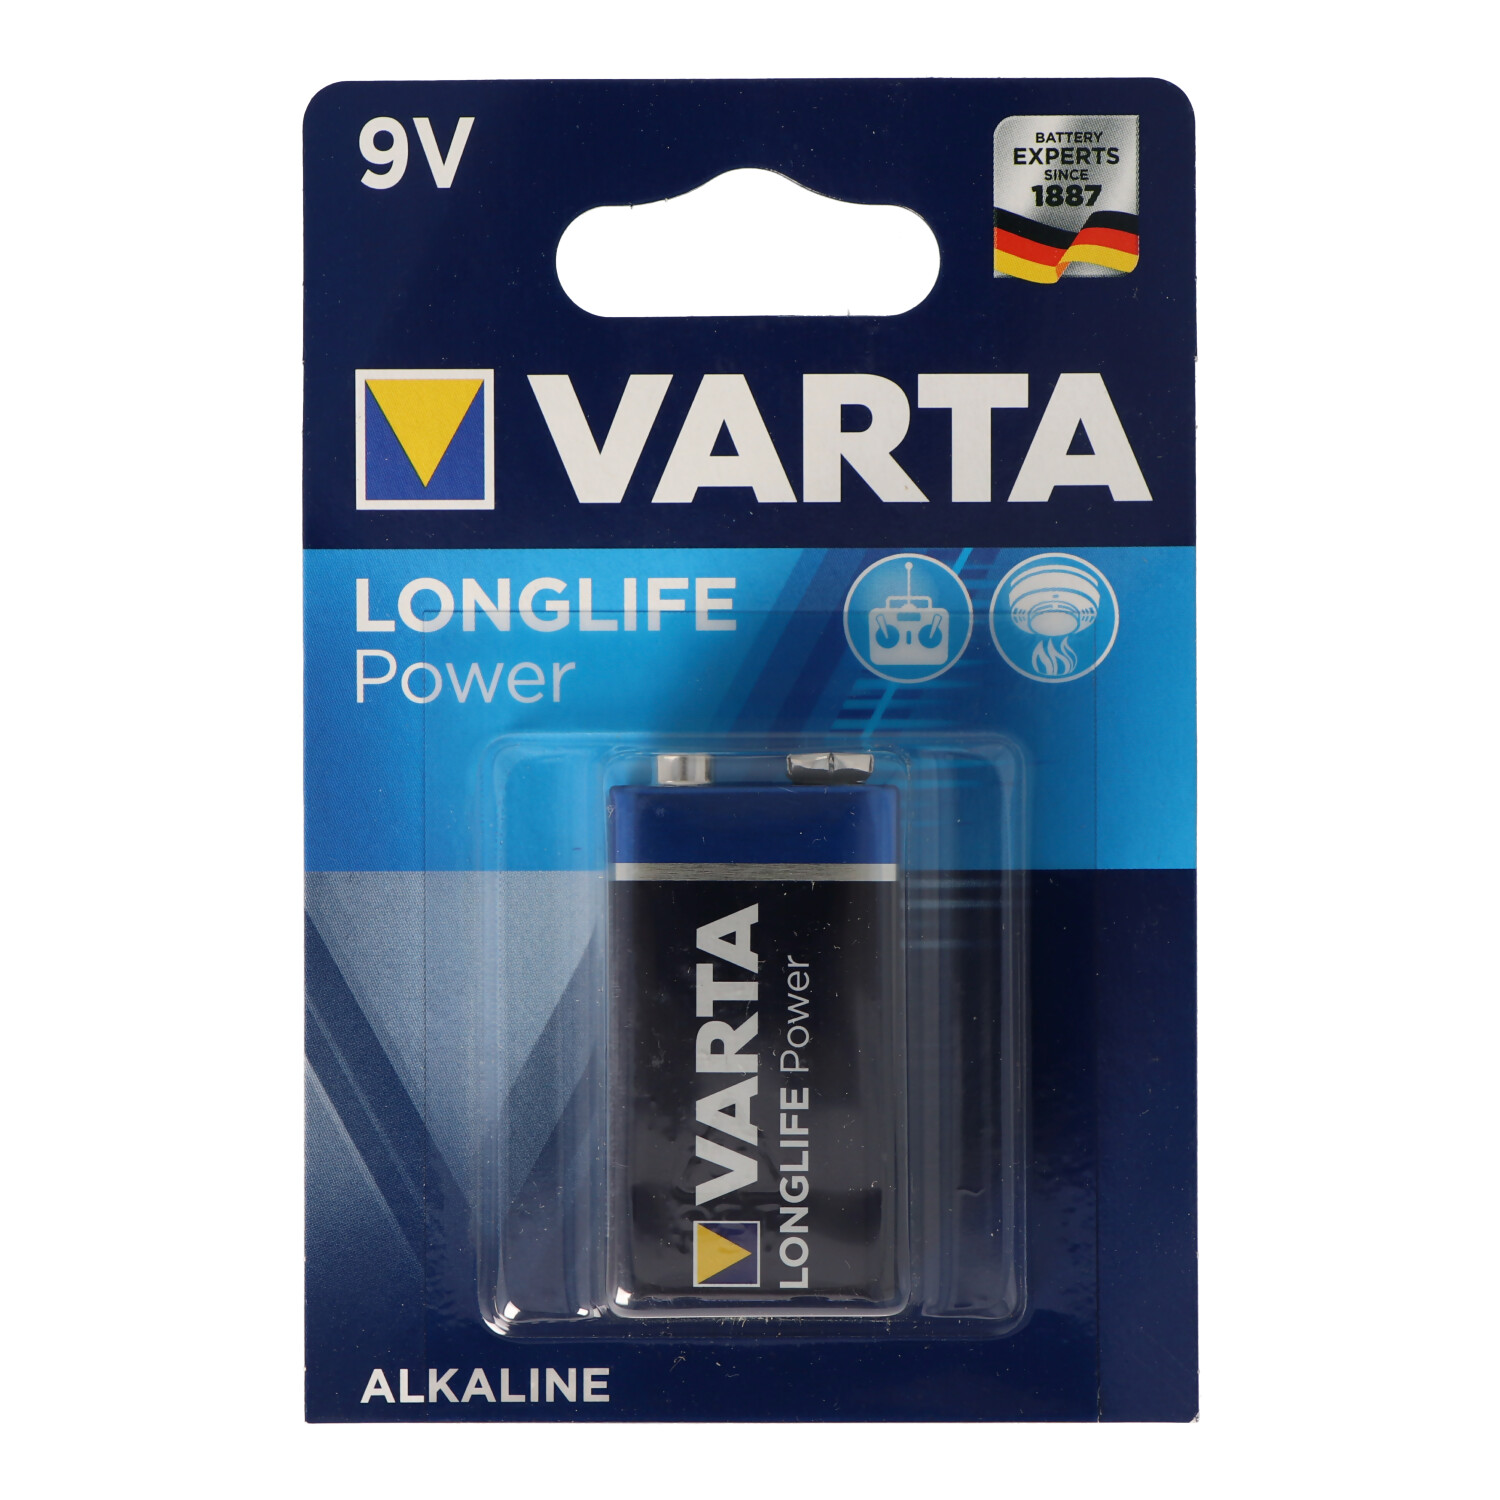 Varta 9V E-Block Batterie 4922 Longlife Power (ehem. High Energy) 1-er Blister 10er Packung